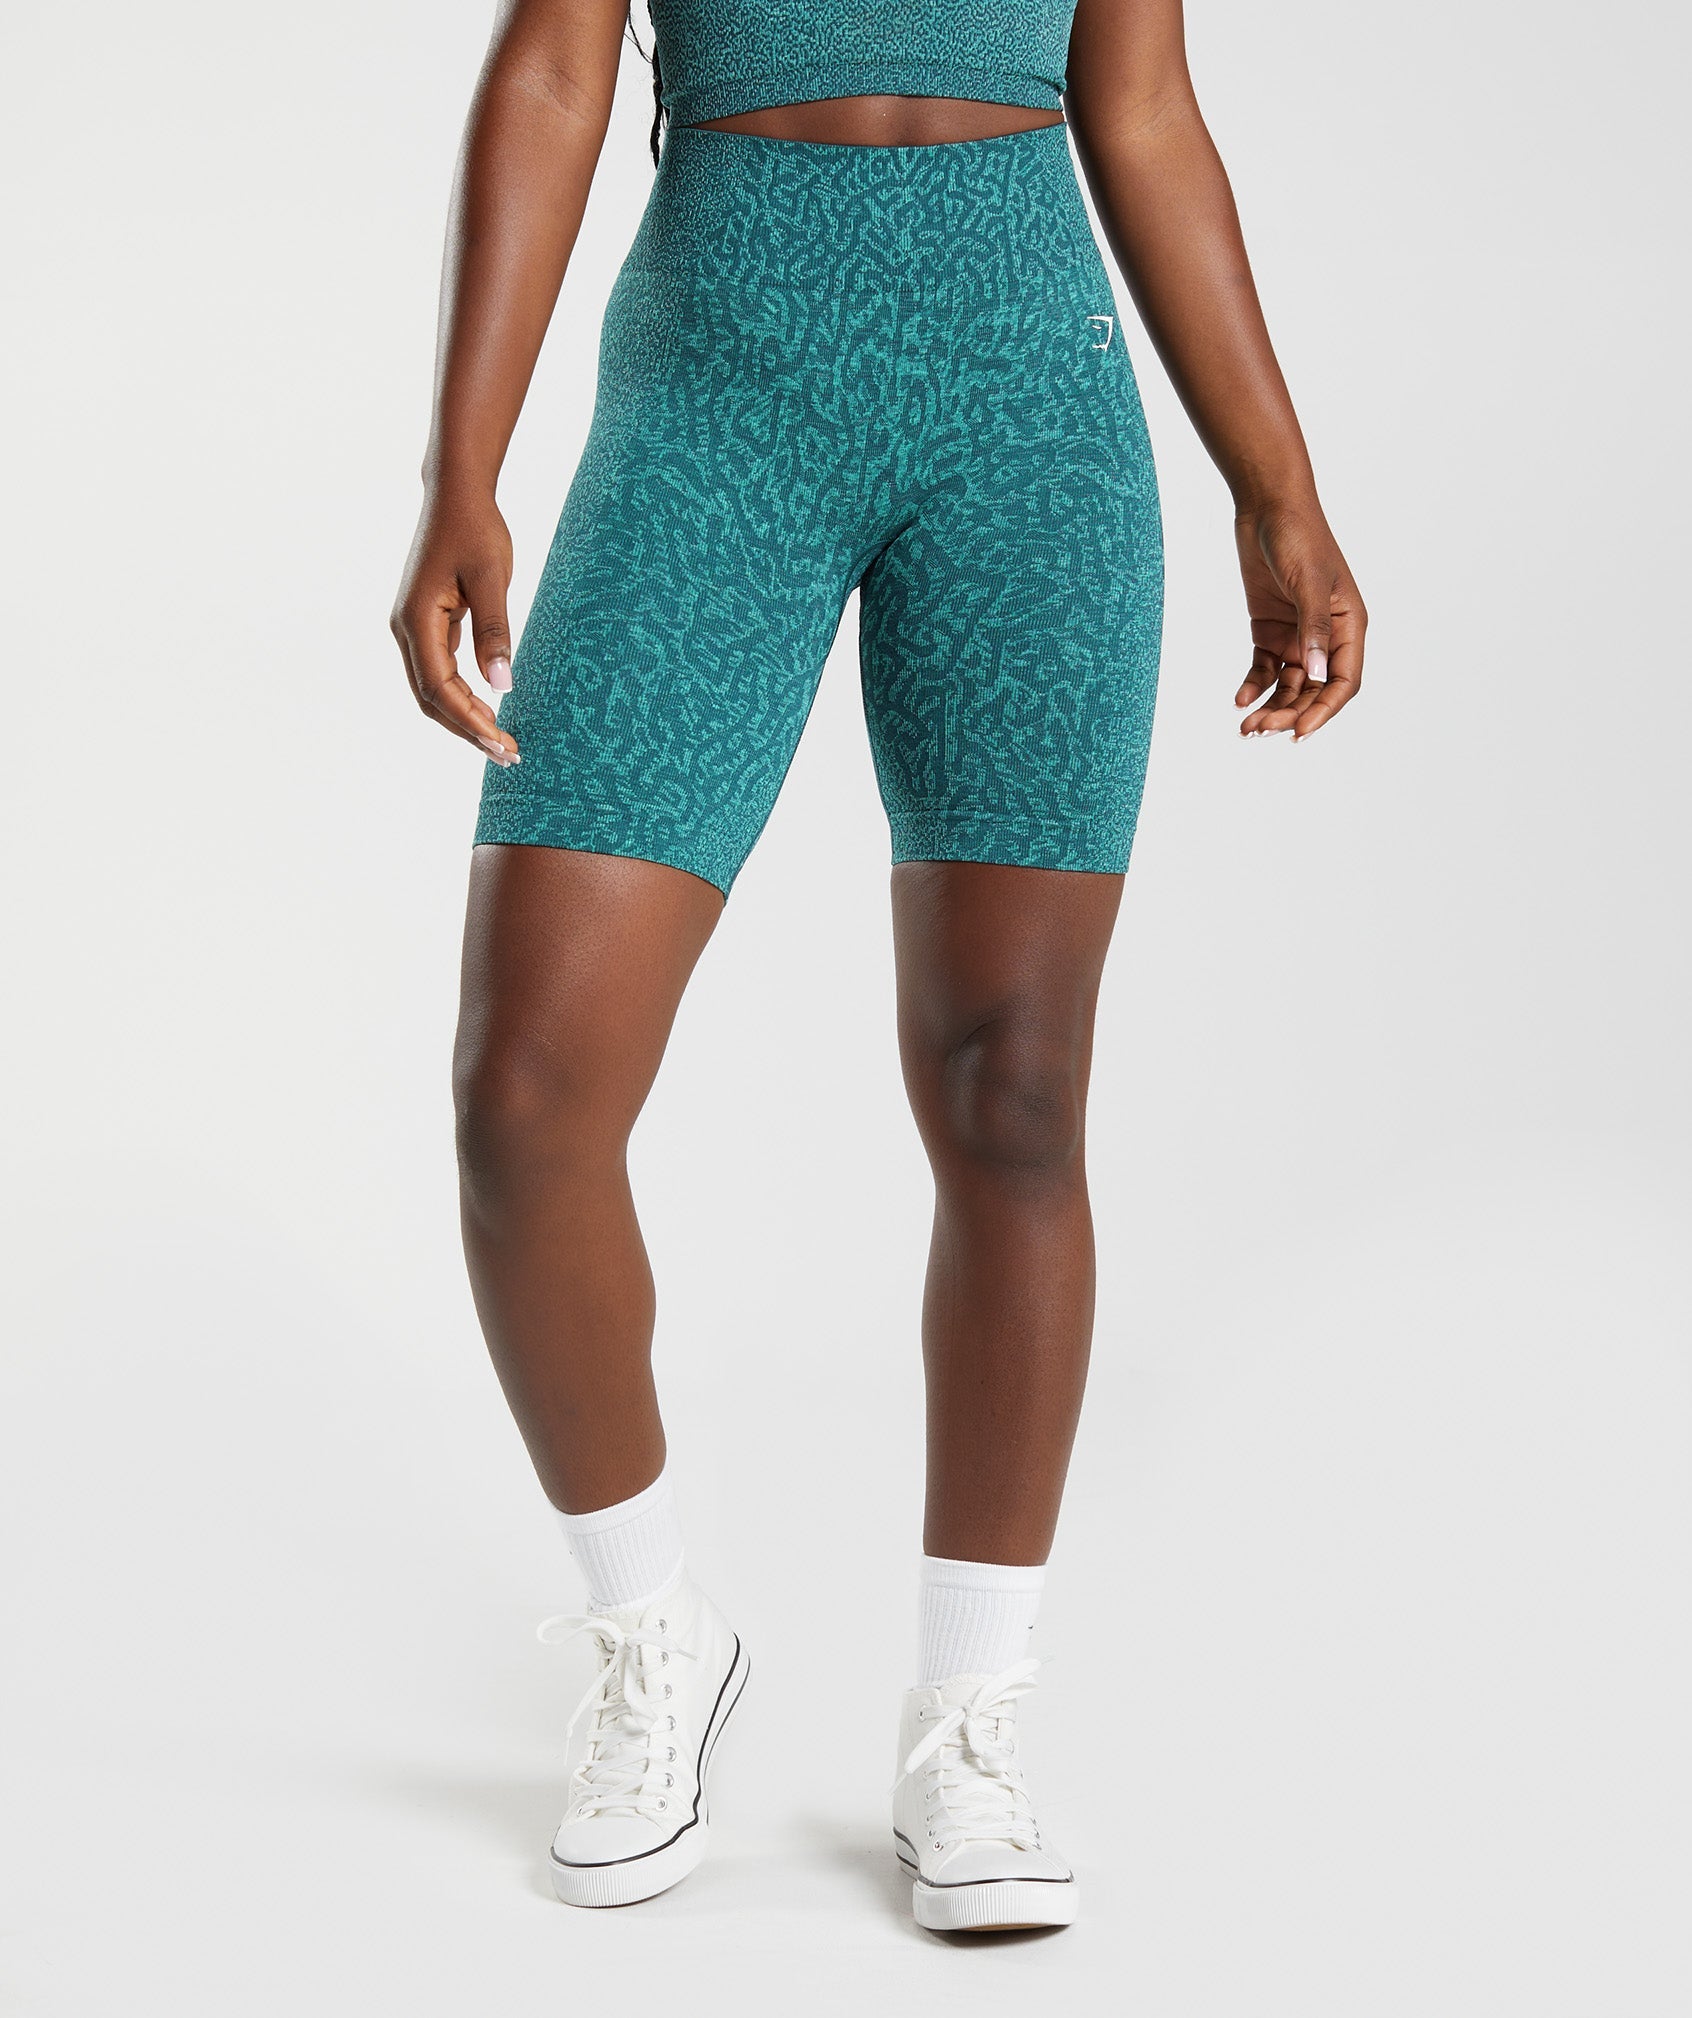 Scrunch Bum Shorts - Gymshark